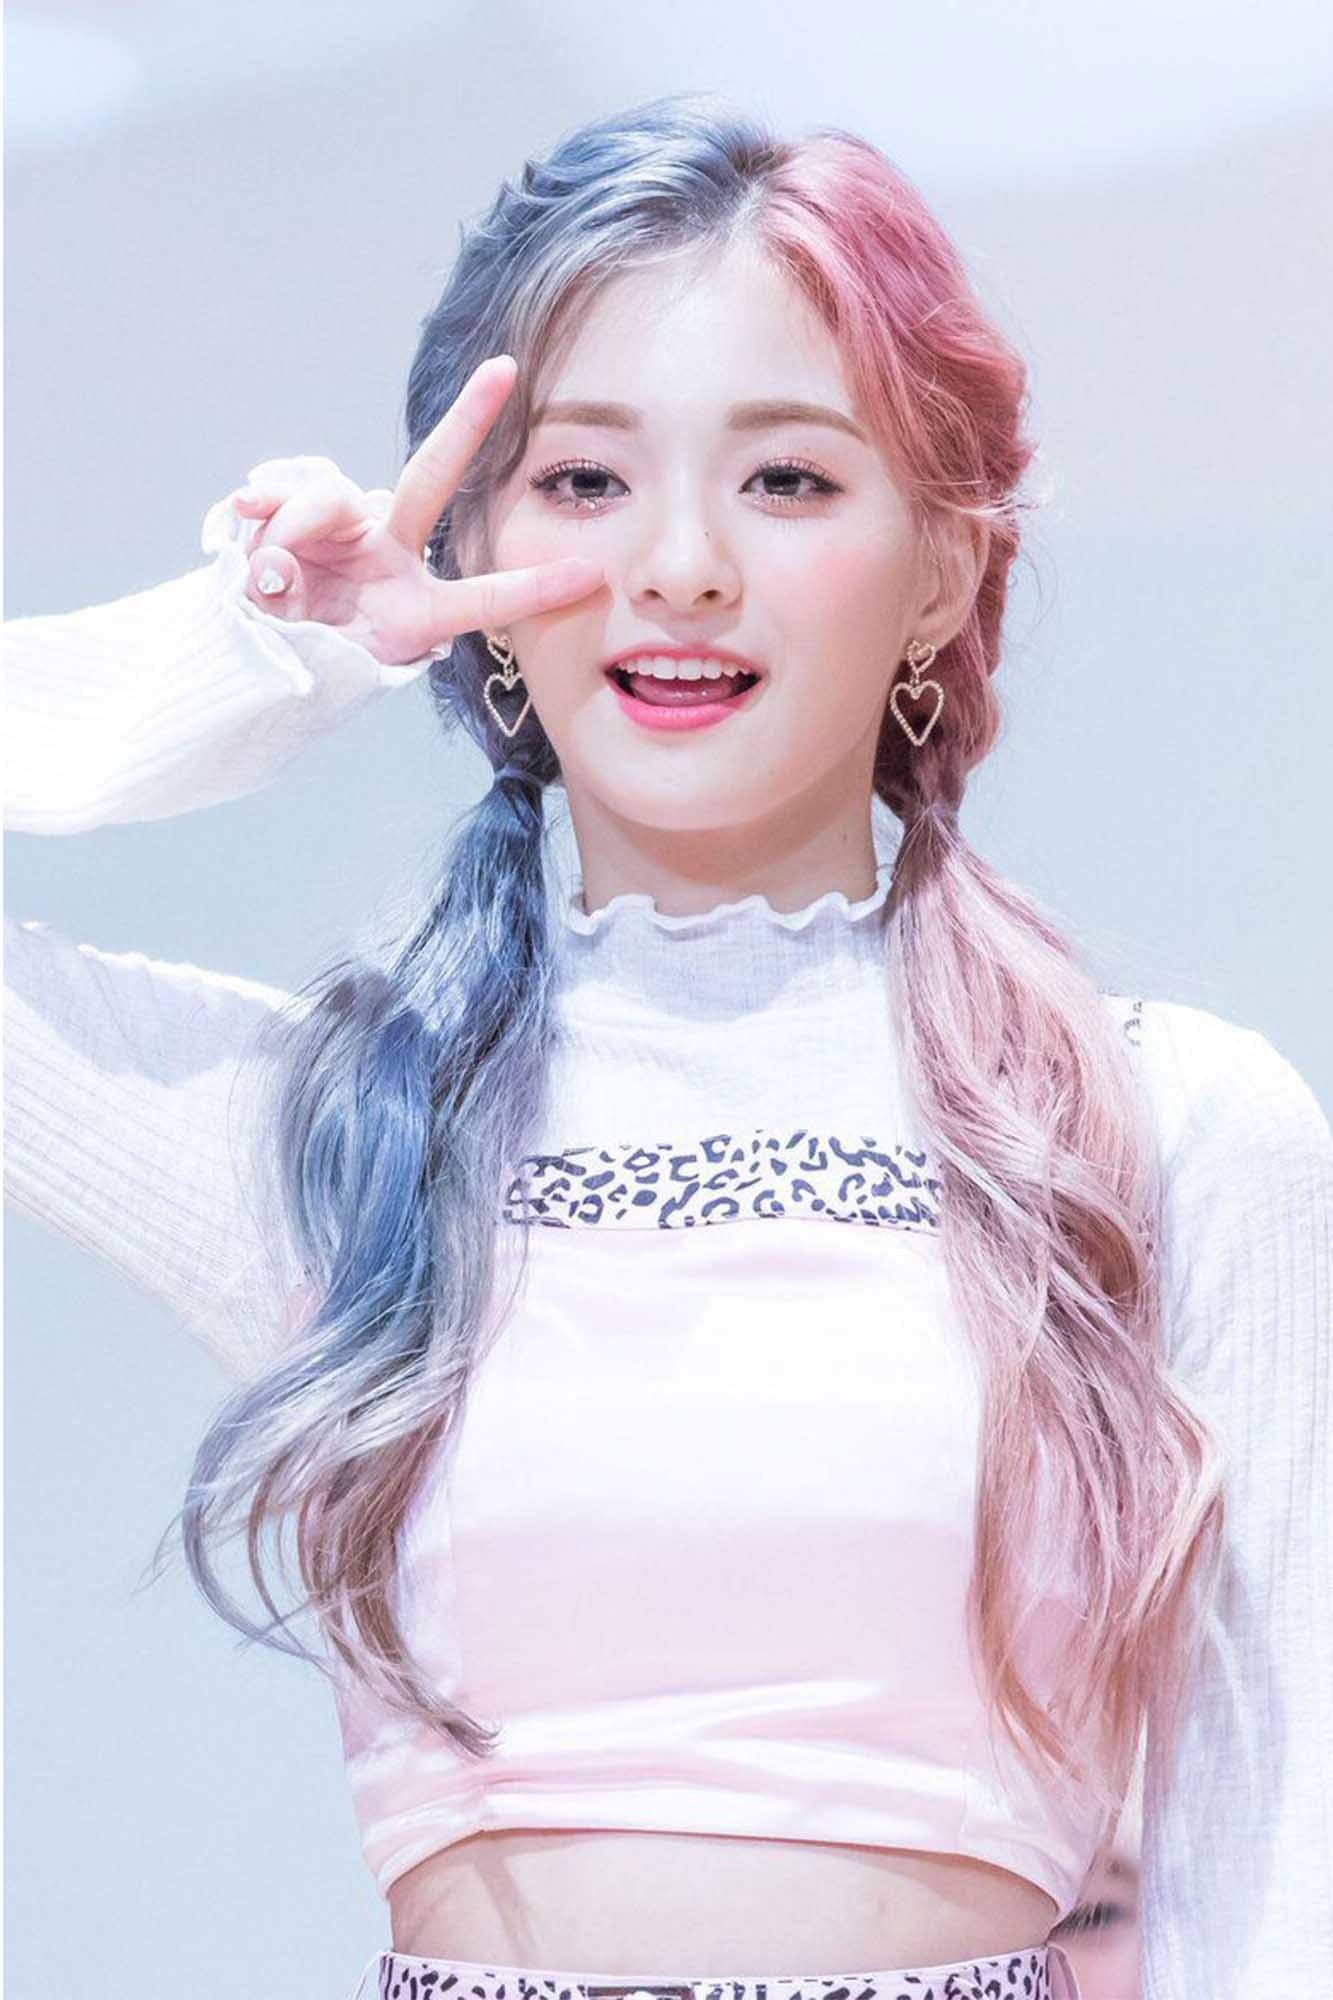 kpop idol wanita lee nakyung dari fromis 9 dengan rambut panjang diikat 2 berwarna biru pastel dan pink